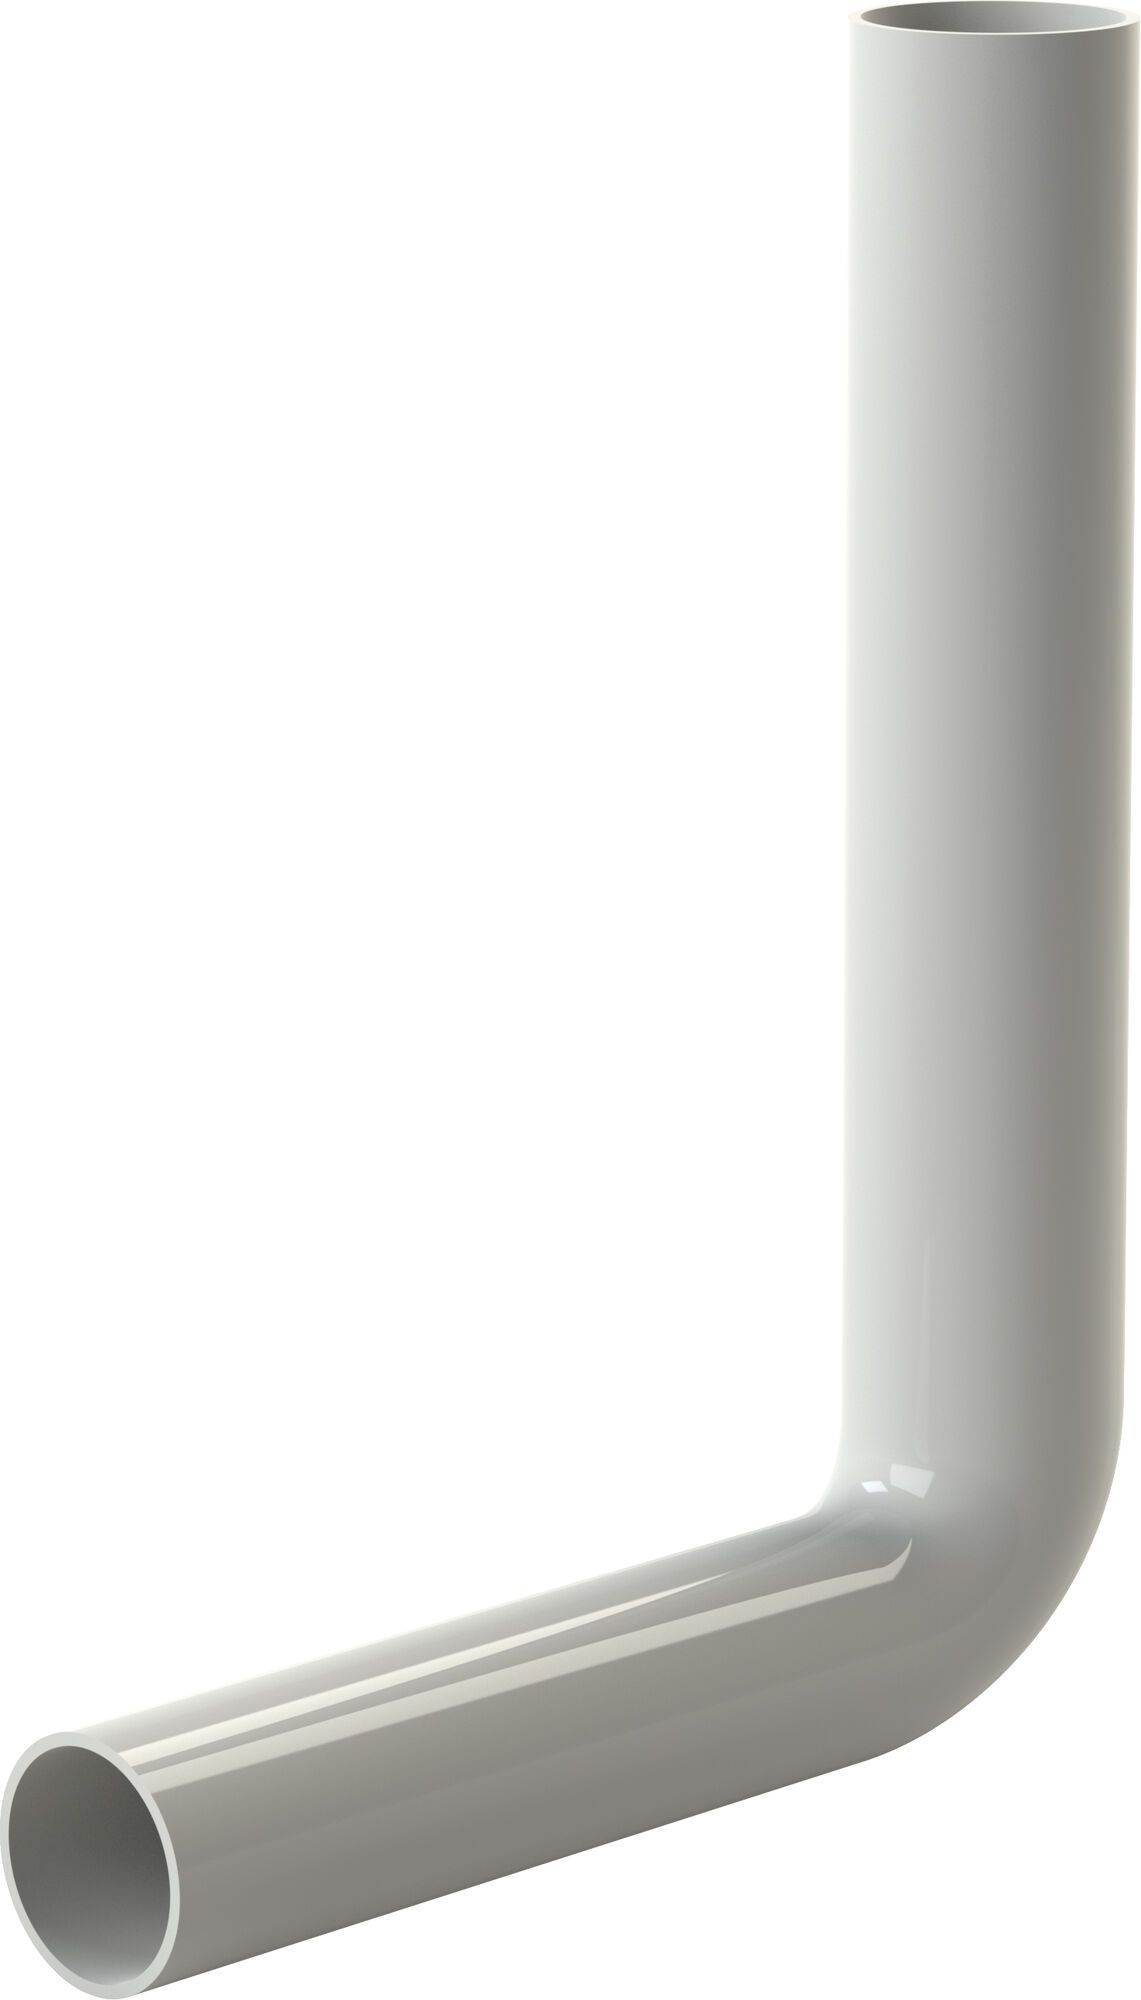 Flush pipe elbow 380 x 210, white